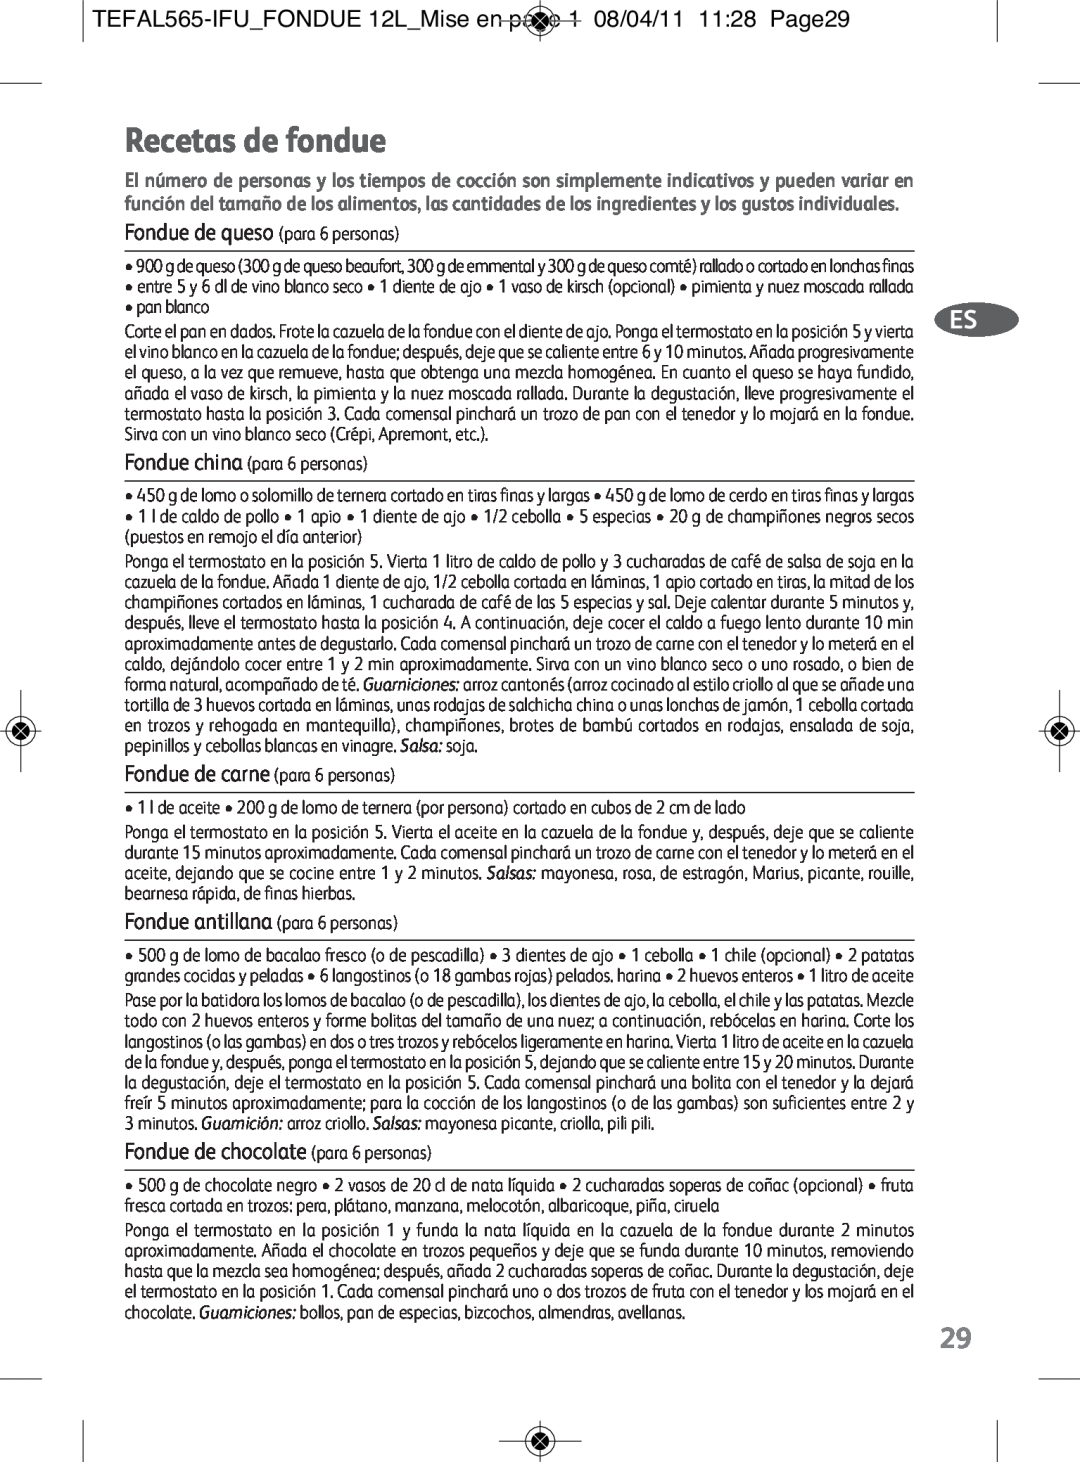 Tefal EF255014, EF255026, EF255012 manual Recetas de fondue, TEFAL565-IFUFONDUE 12LMise en page 1 08/04/11 1128 Page29 